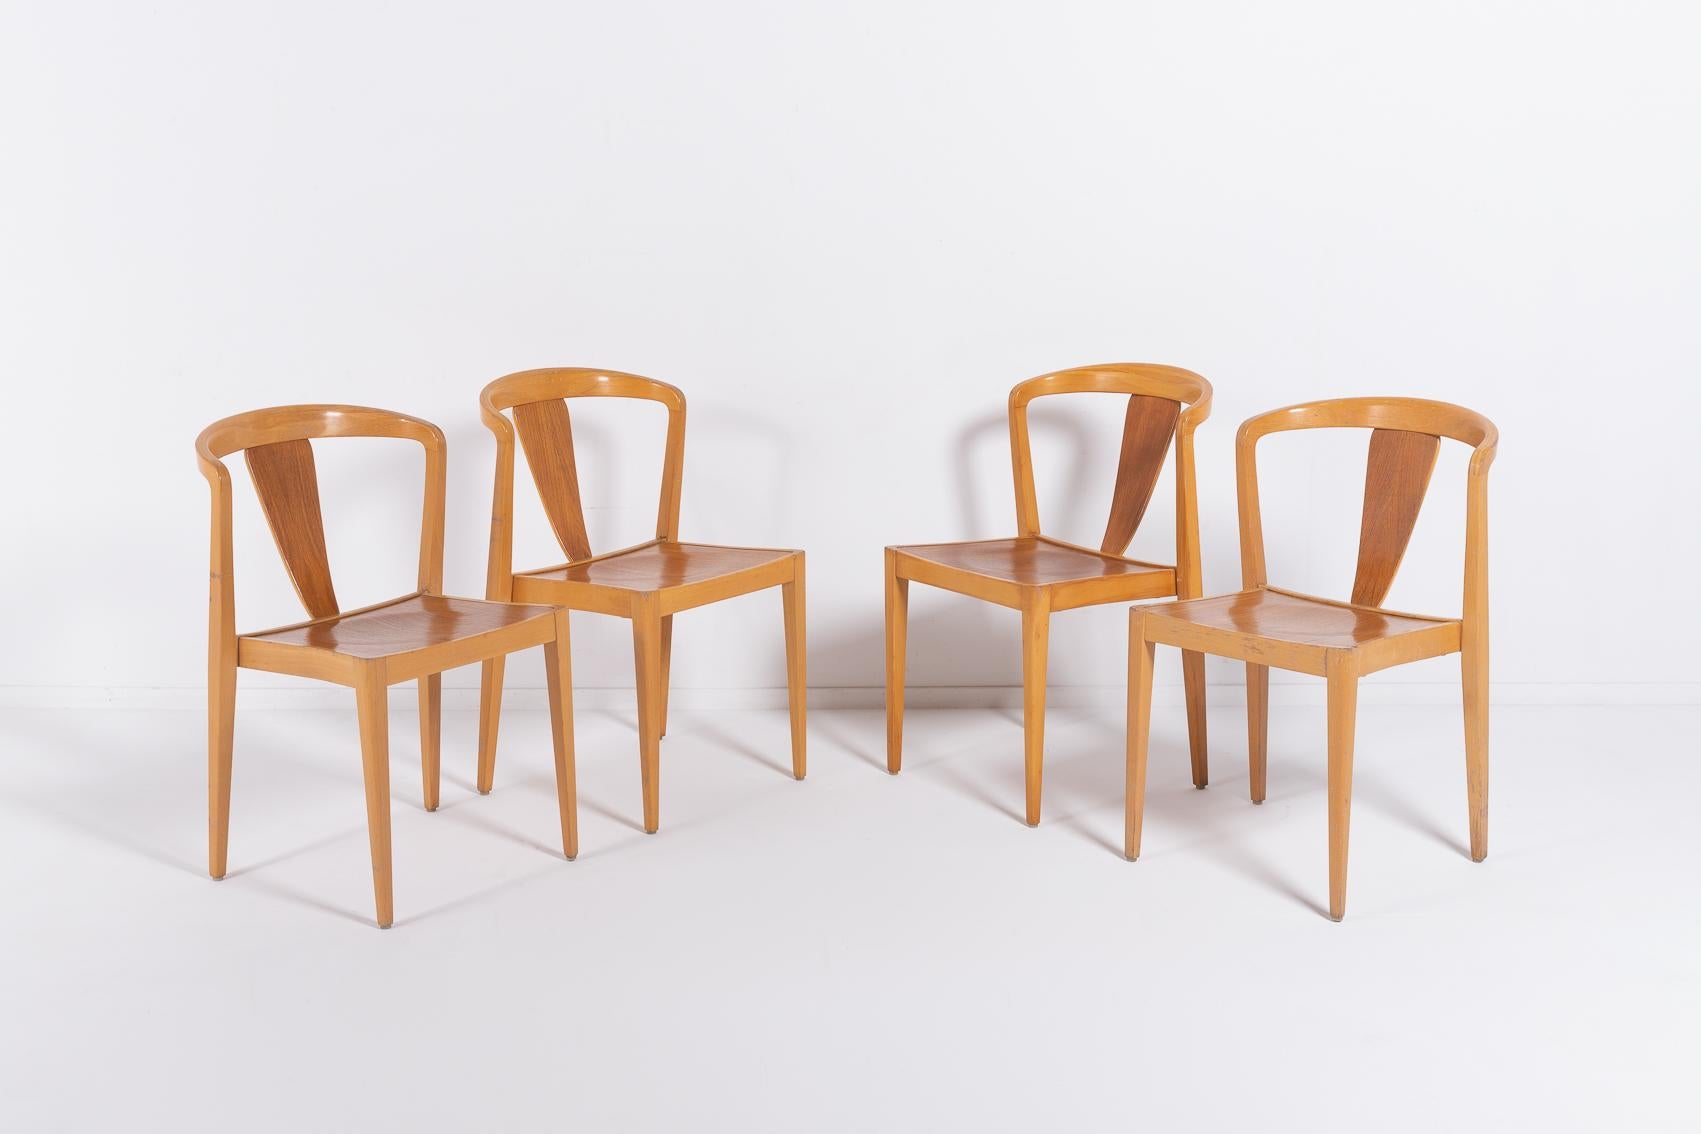 Chaises élégantes conçues par Axel Larsson dans les années 1960 pour Bodafors. Les chaises ont un cadre en érable verni avec une assise et un dossier en placage de bois. Joli design scandinave avec des courbes étonnantes.

Condit
Bon, usure due à